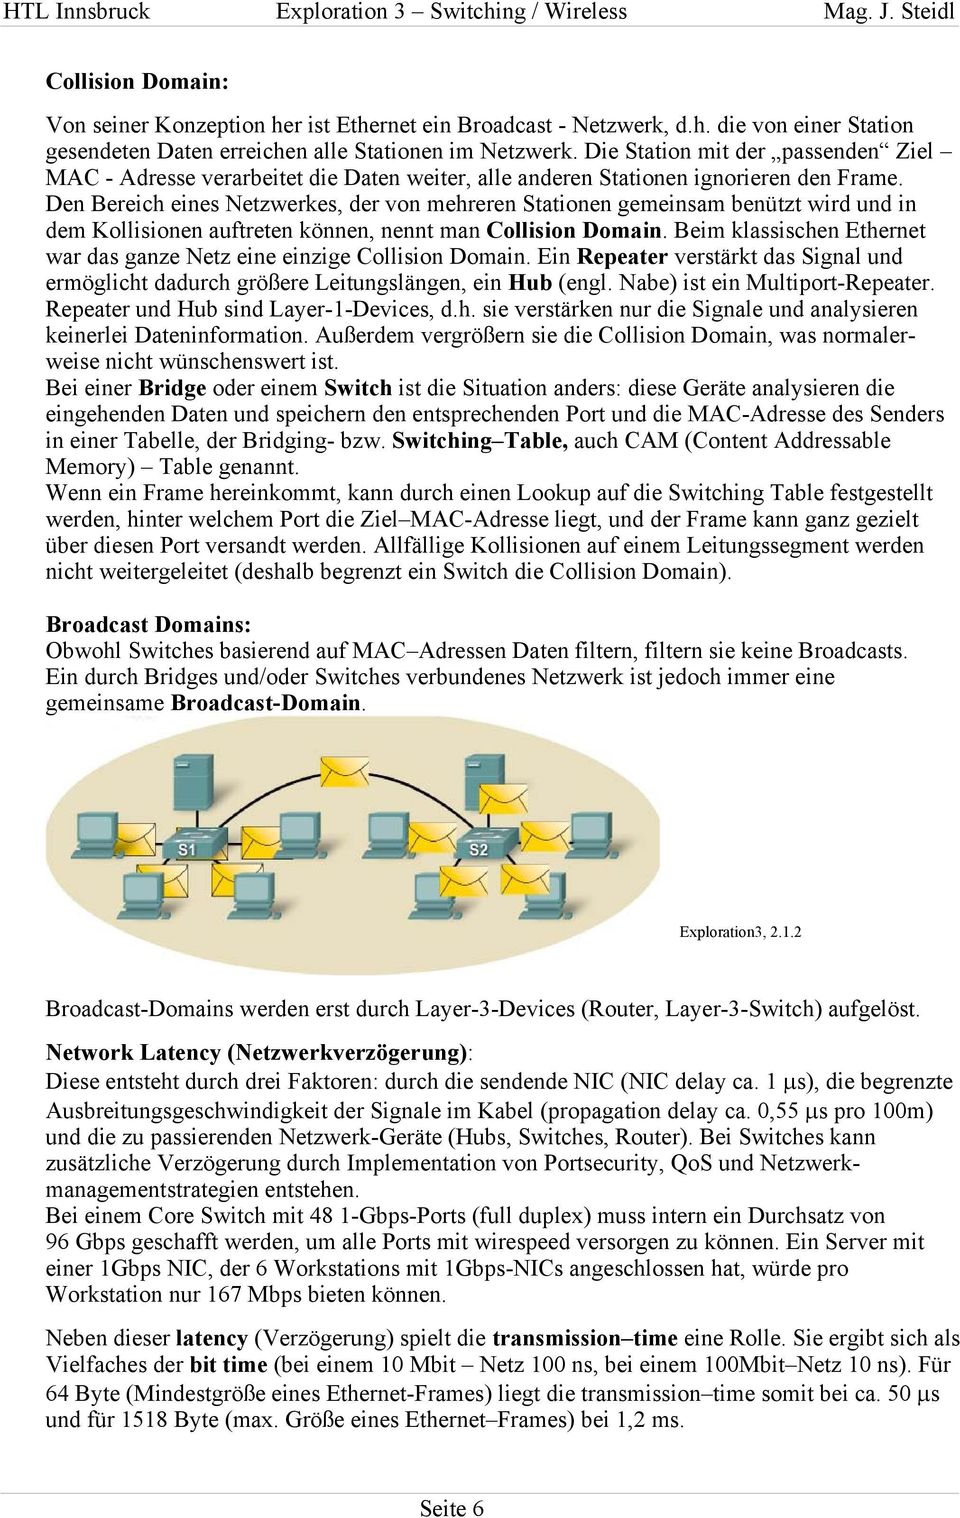 Den Bereich eines Netzwerkes, der von mehreren Stationen gemeinsam benützt wird und in dem Kollisionen auftreten können, nennt man Collision Domain.